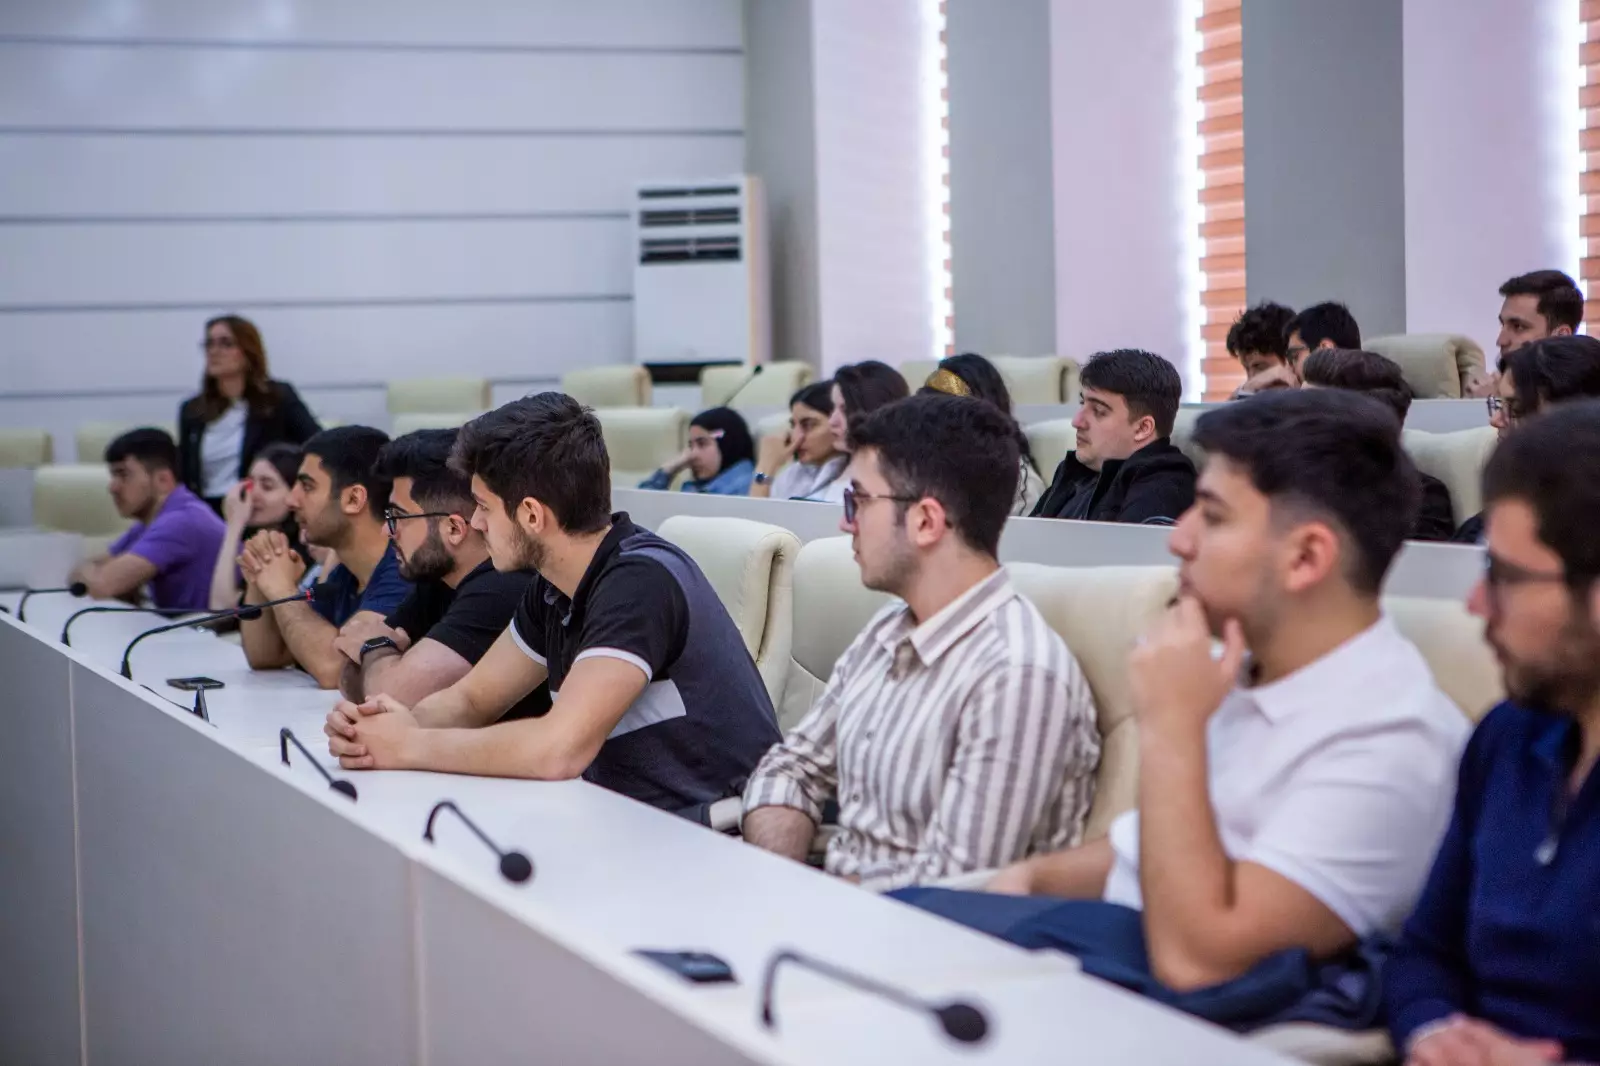 Azərbaycan Fintex Assosiasiyasının "Fintech Talks" layihəsinin ilk görüşü keçirilib - FOTO